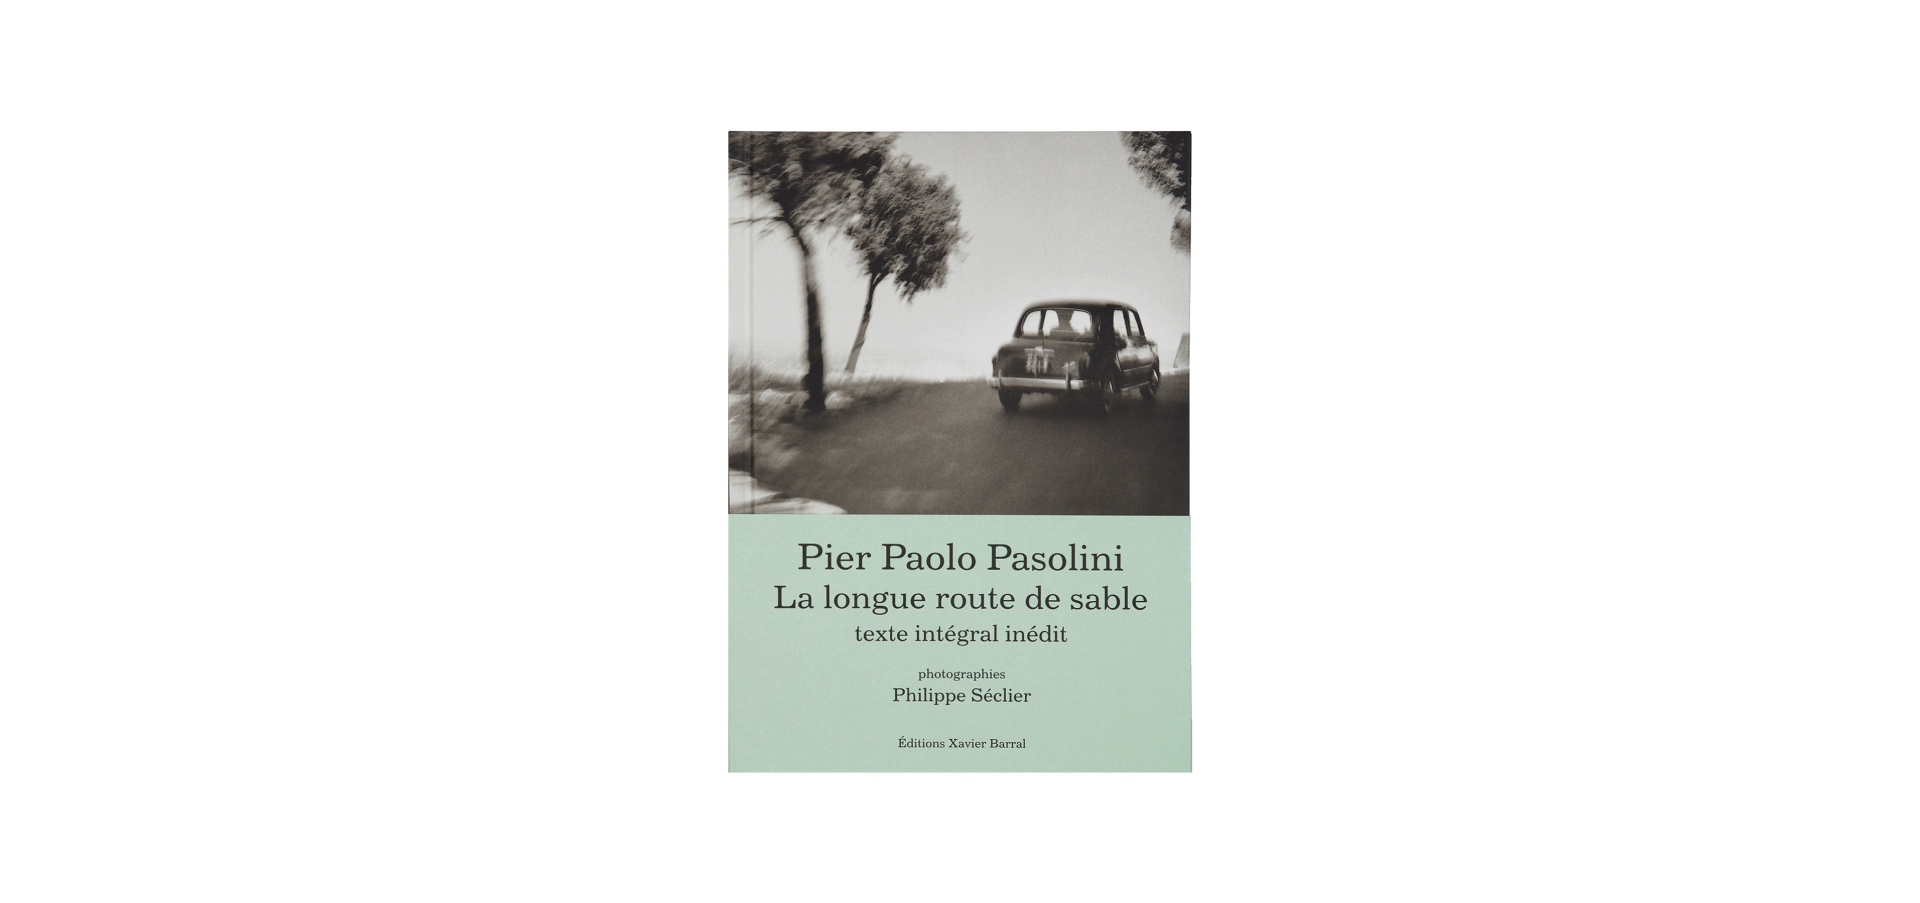 Pier Paolo Pasolini, La longue route de sable